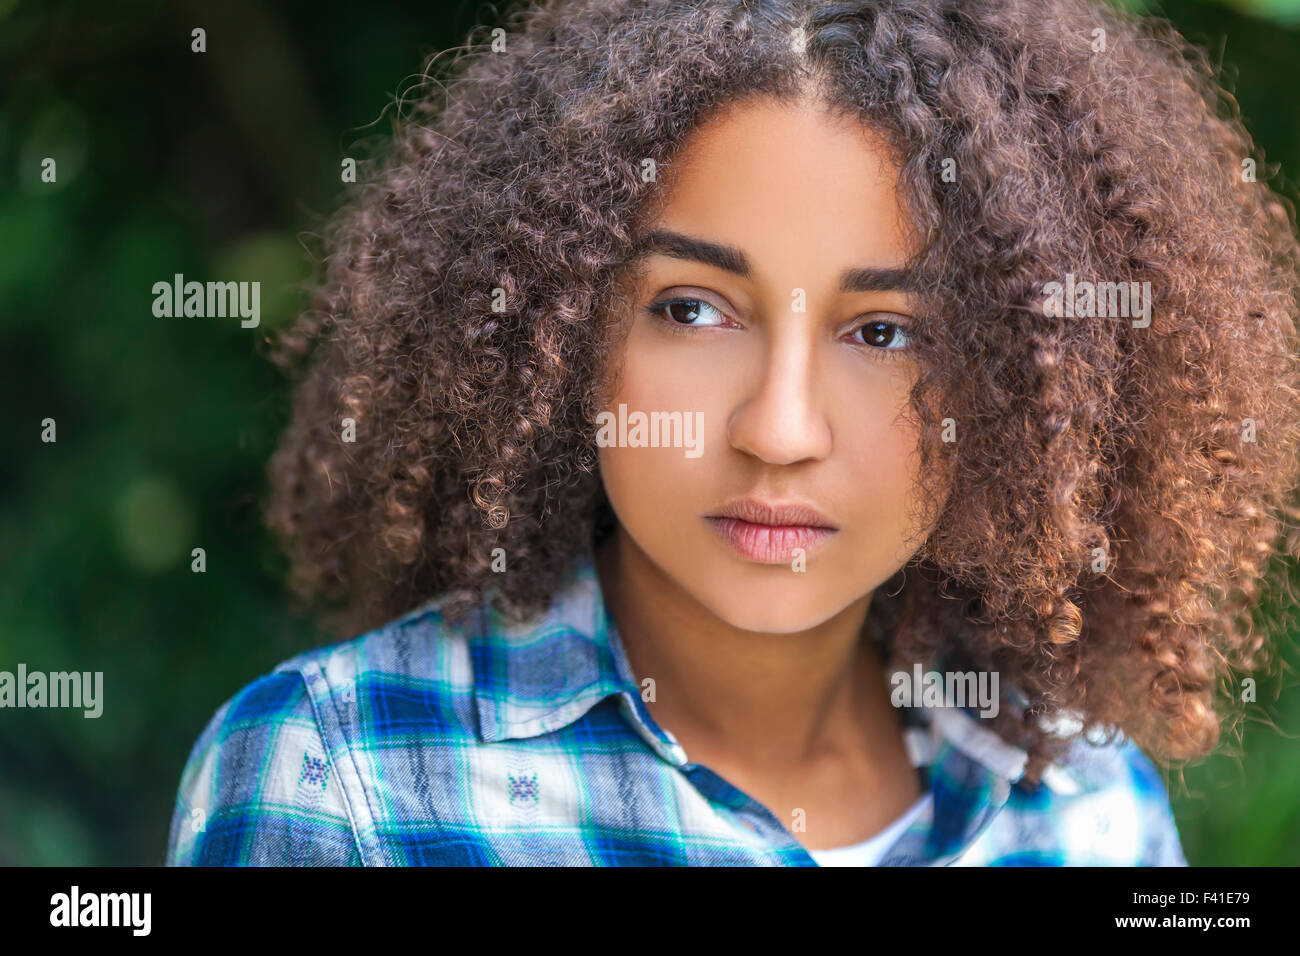 Outdoor ritratto della bella felice razza mista americano africano ragazza adolescente femmine giovane donna che guarda pensieroso o triste Foto Stock